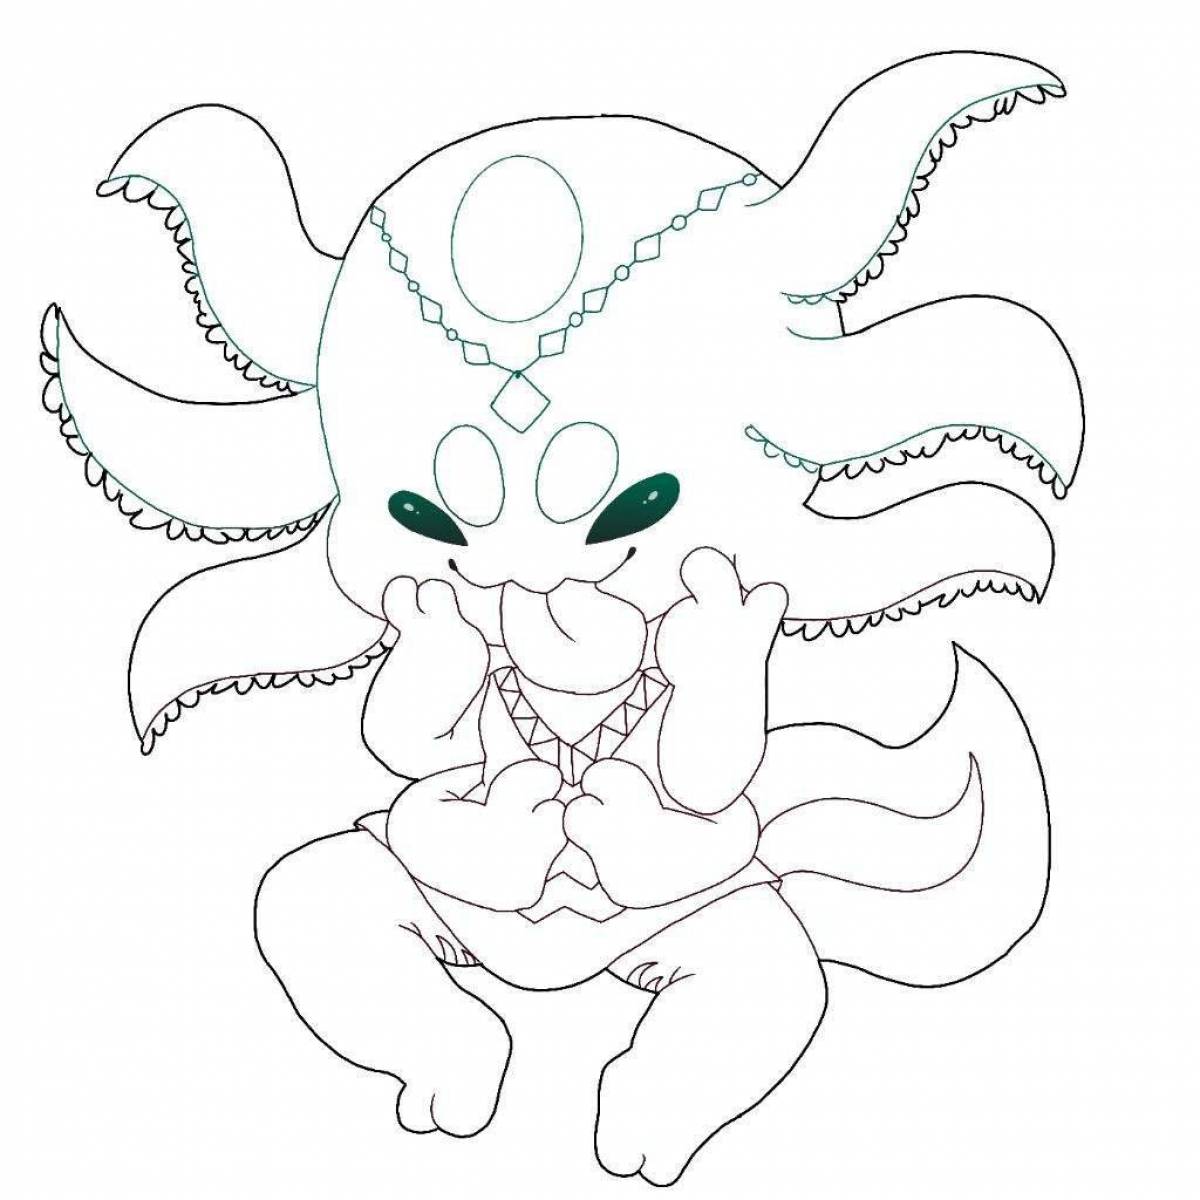 Axolotl fun coloring